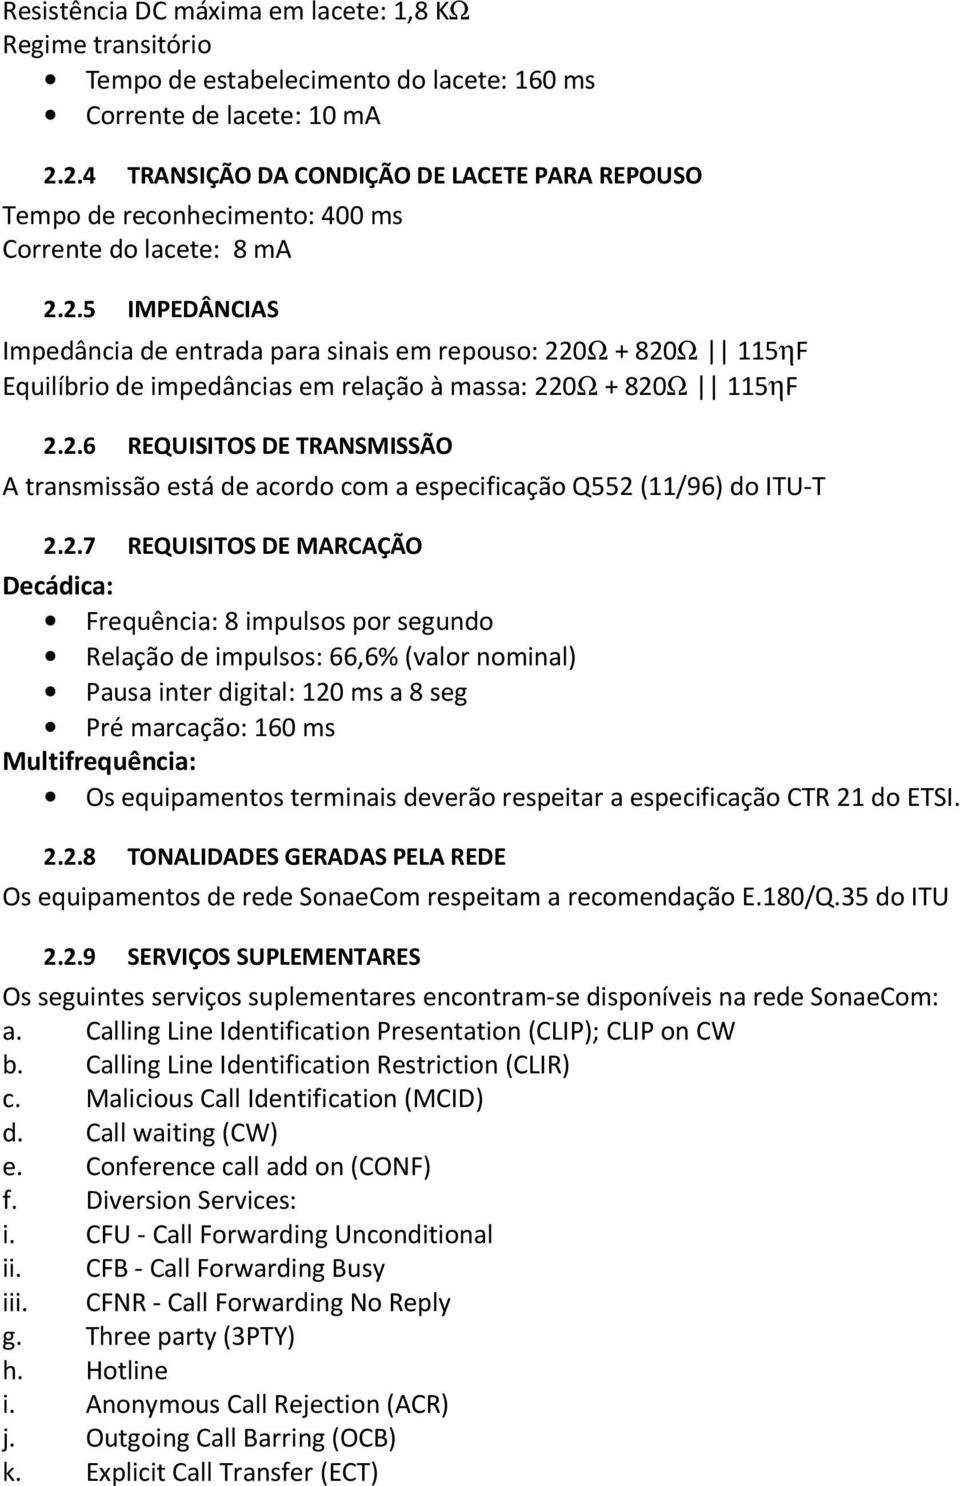 2.6 REQUISITOS DE TRANSMISSÃO A transmissão está de acordo com a especificação Q552 (11/96) do ITU-T 2.2.7 REQUISITOS DE MARCAÇÃO Decádica: Frequência: 8 impulsos por segundo Relação de impulsos: